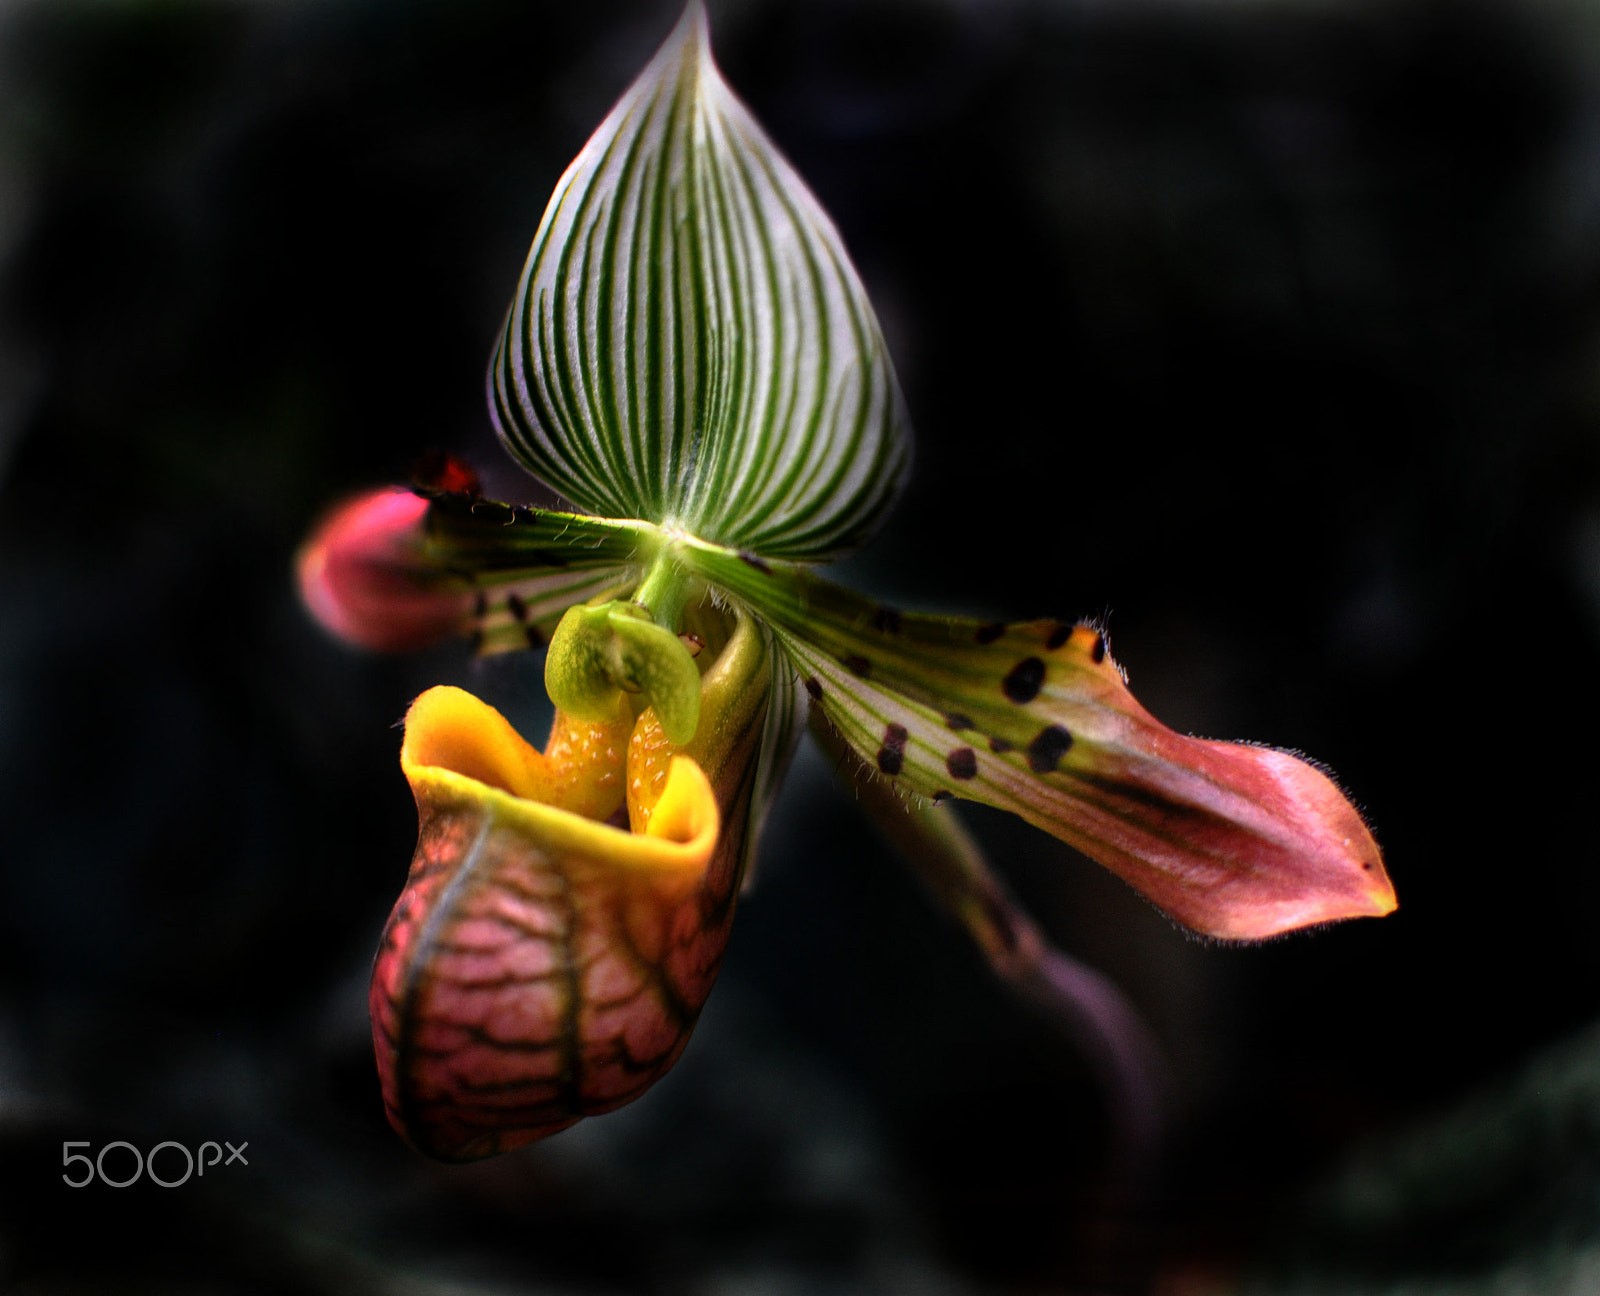 Nikon D3000 + Nikon AF-S DX Nikkor 35mm F1.8G sample photo. Slipper orchid flower photography